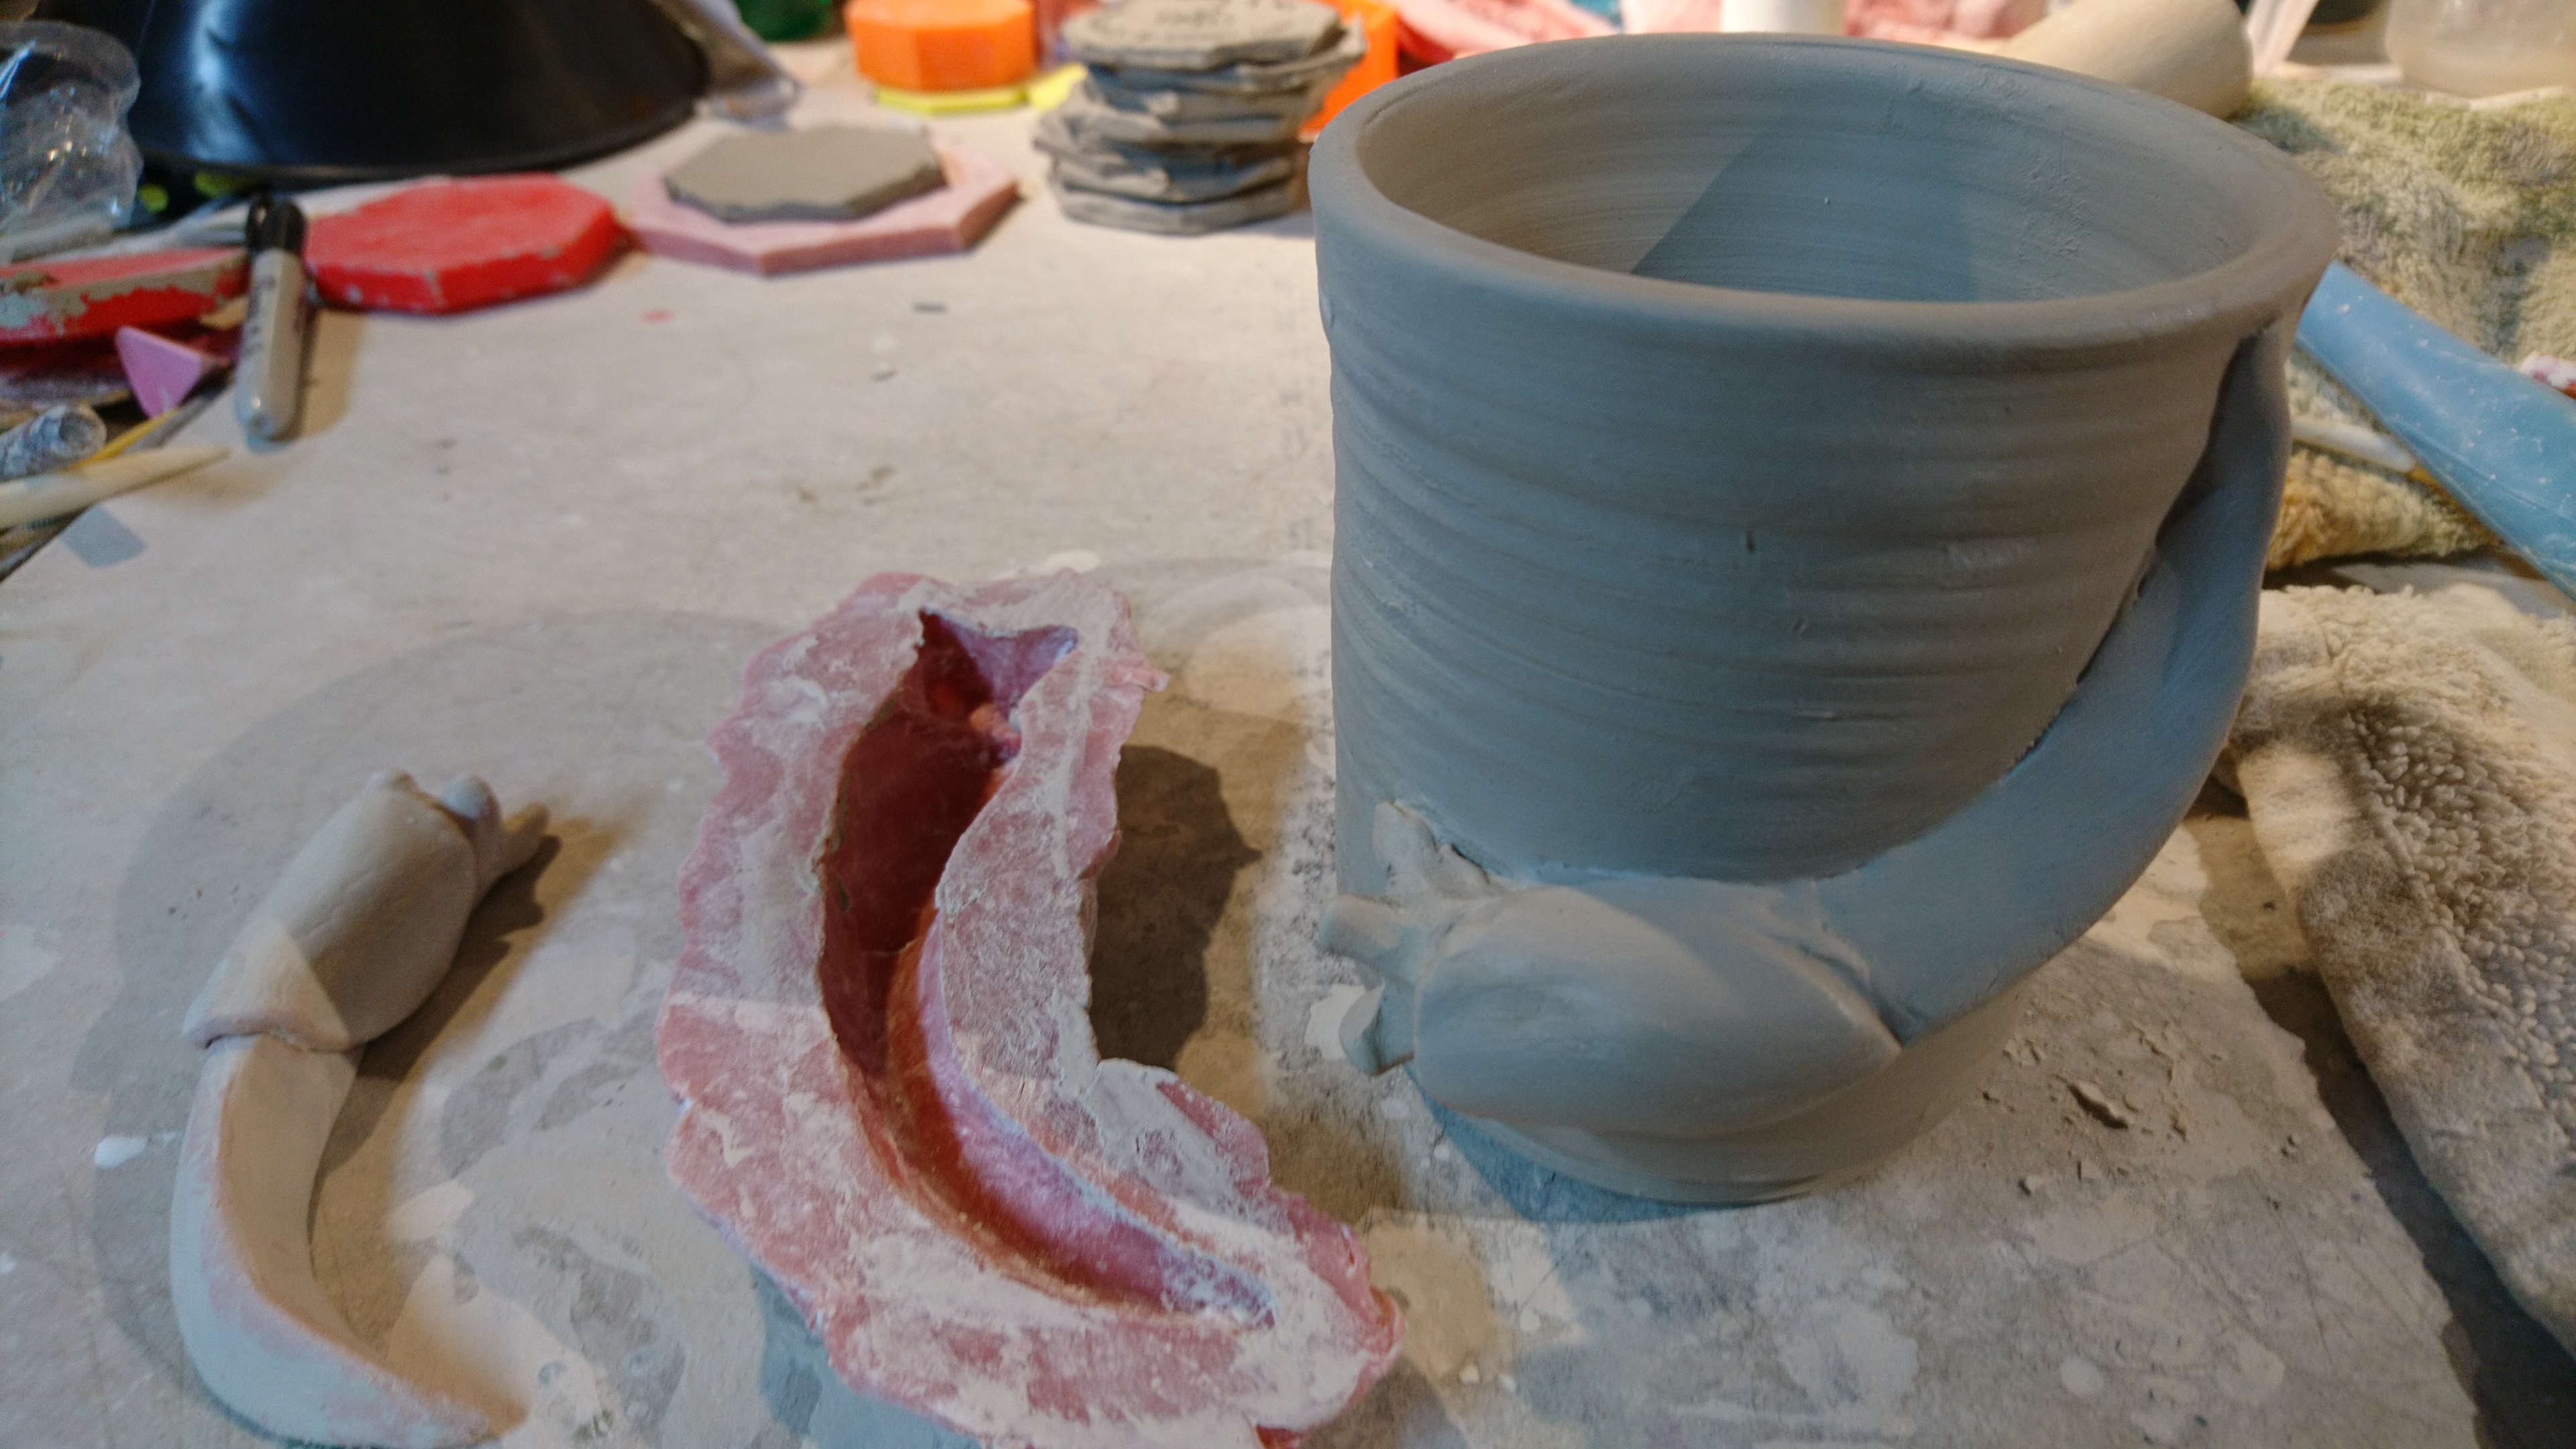 slug sculpture, mold, and slug on mug